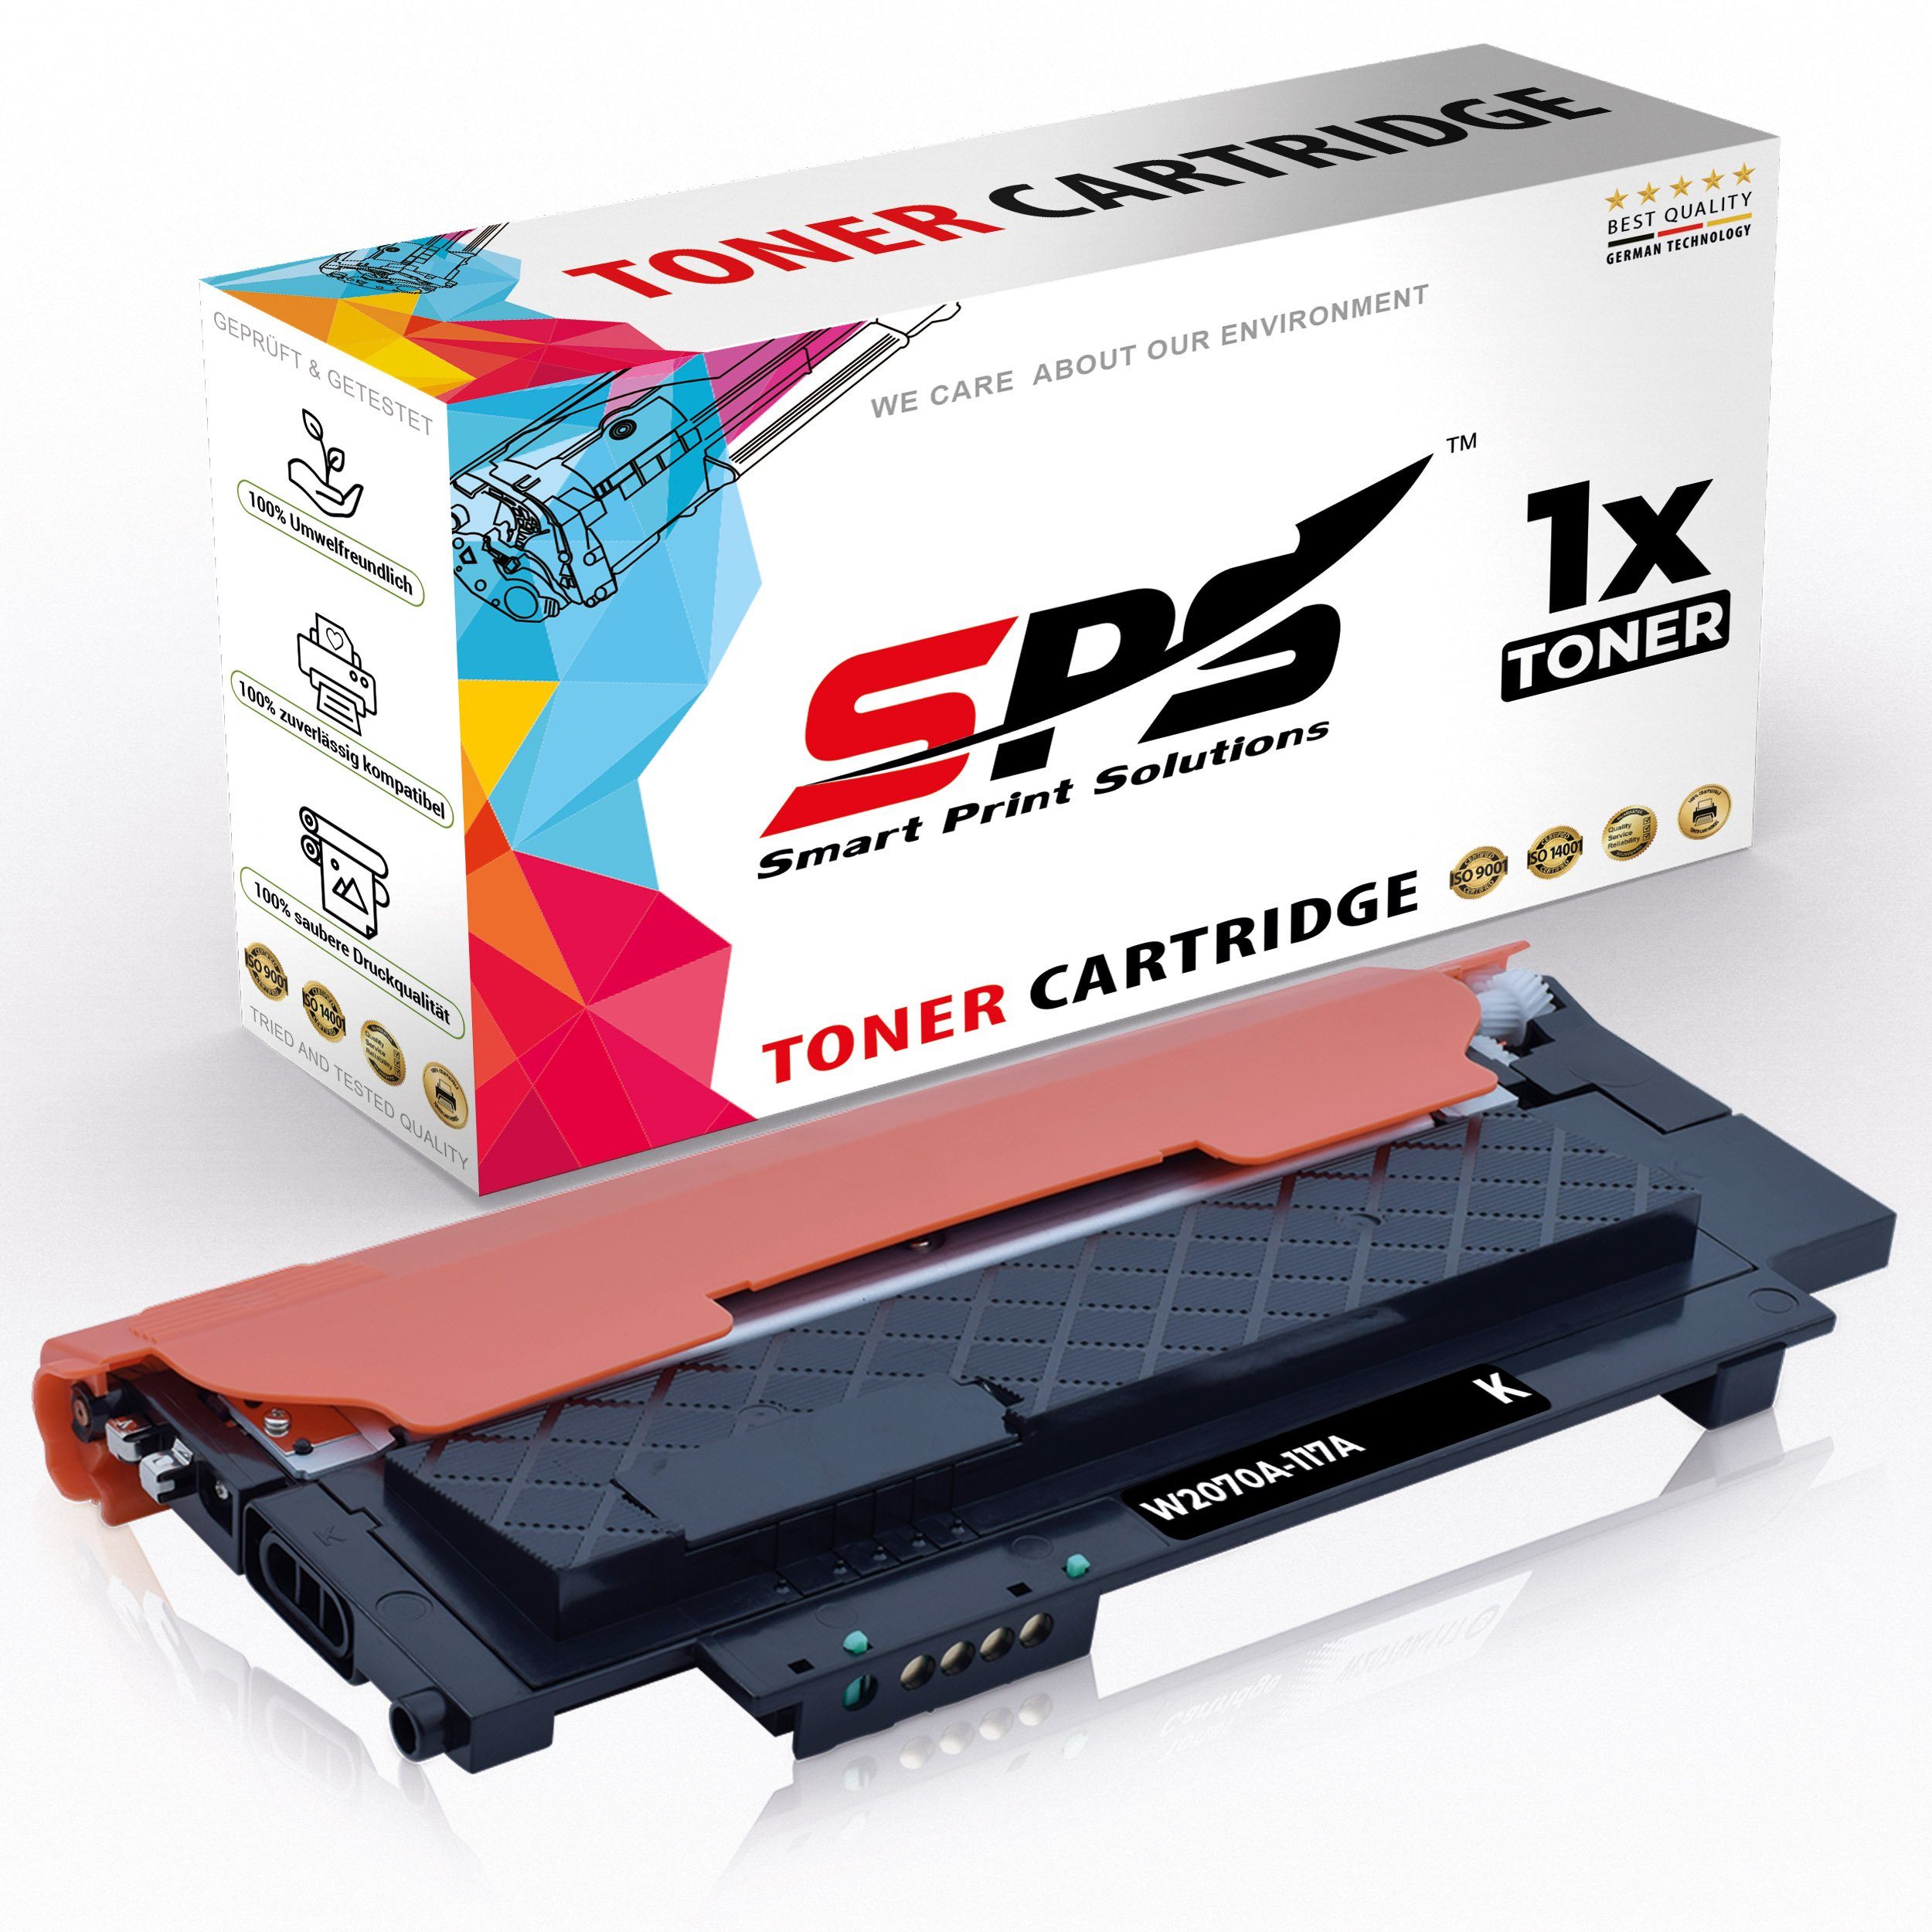 Laser (6HU09A), SPS HP für Pack) Kompatibel Color 179FWG (1er Tonerkartusche MFP